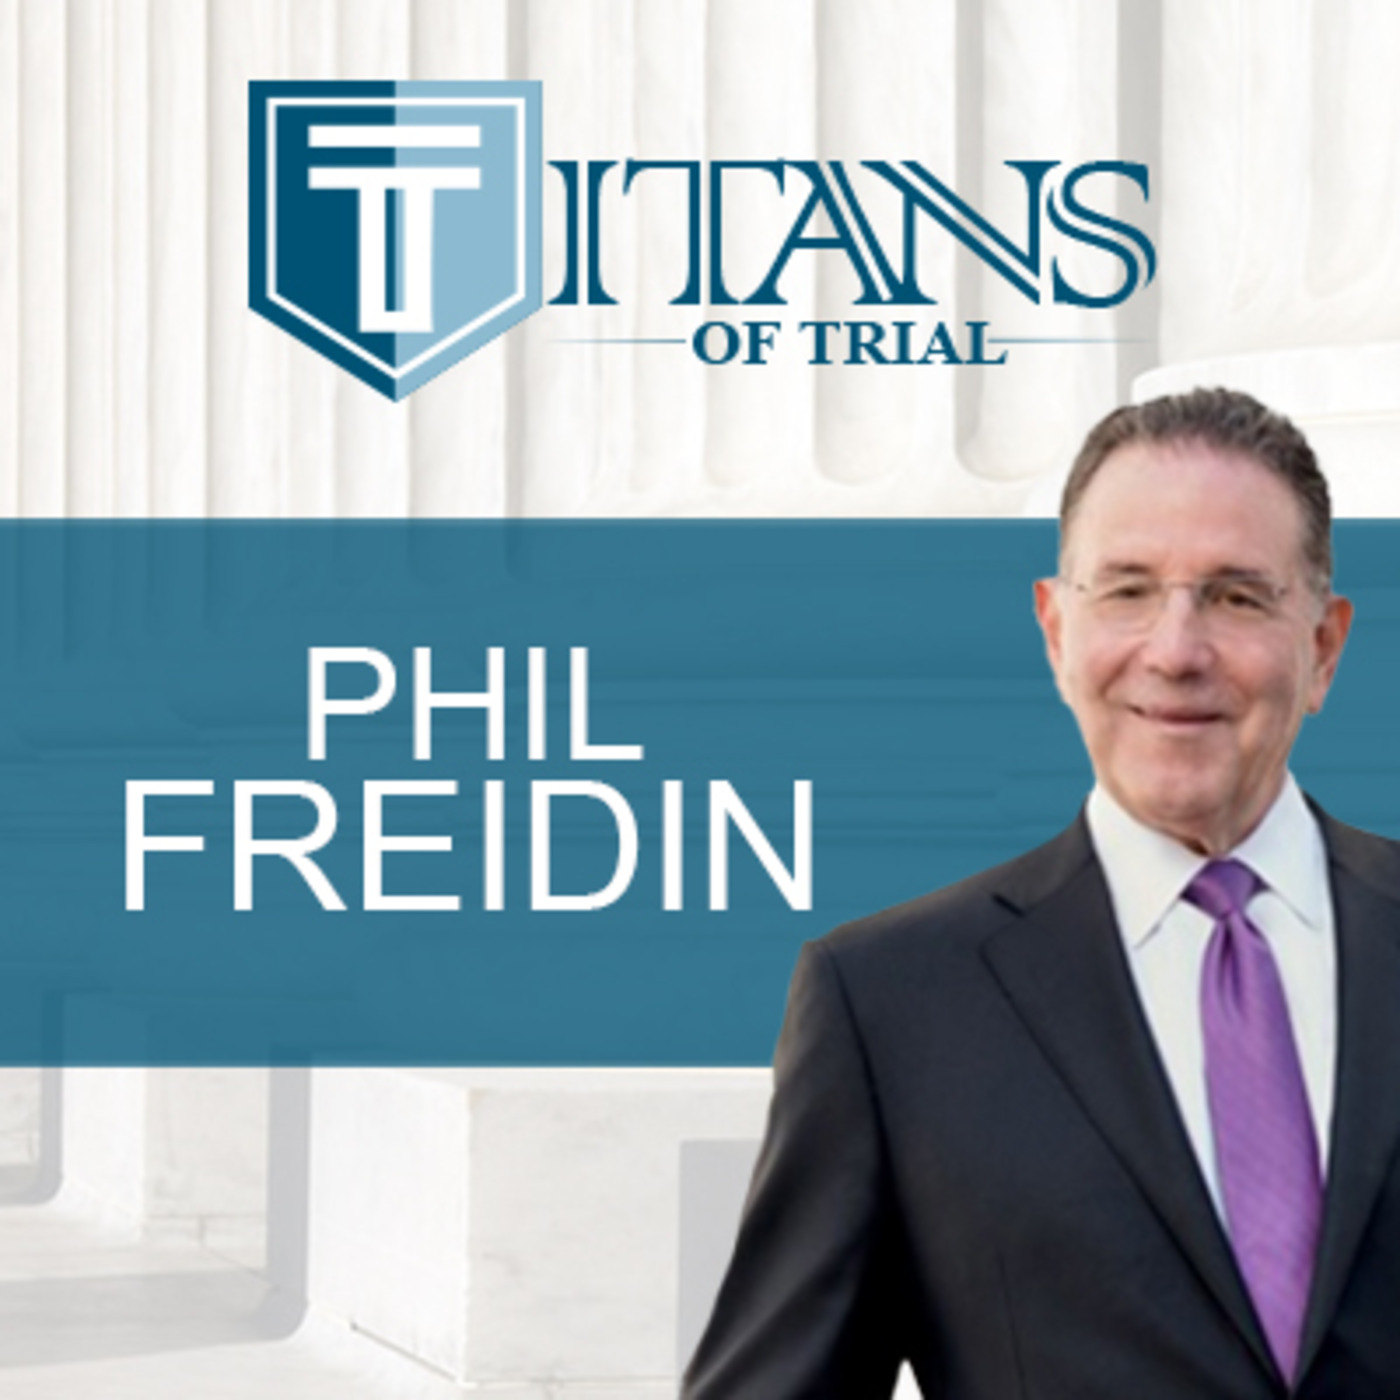 Titans of Trial – Phil Freidin